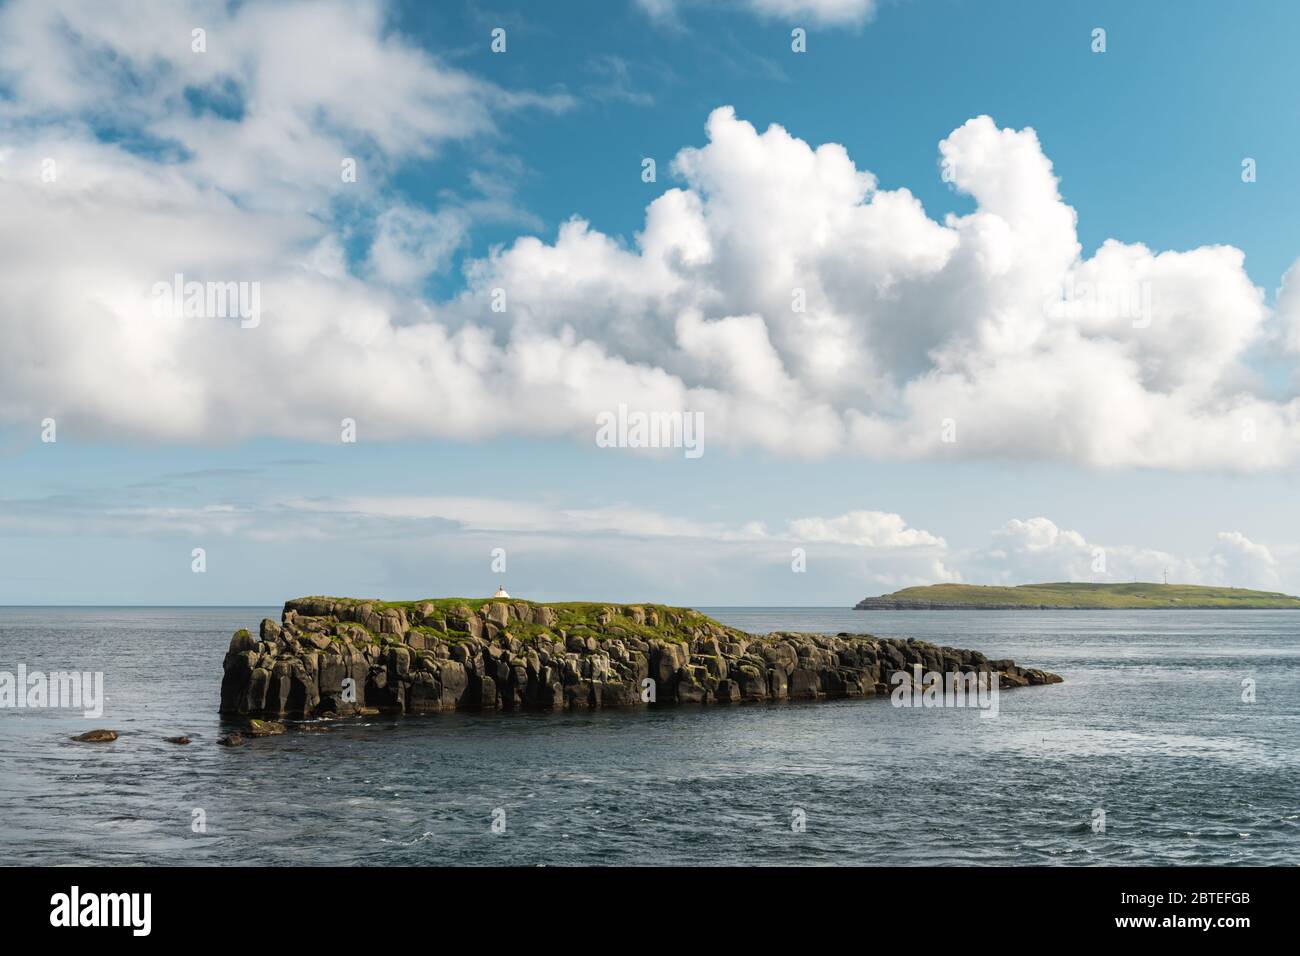 Vue d'été de petites îles à la périphérie de la ville de Torshavn, capitale des îles Féroé, île de Streymoy, Danemark. Photographie de paysage Banque D'Images